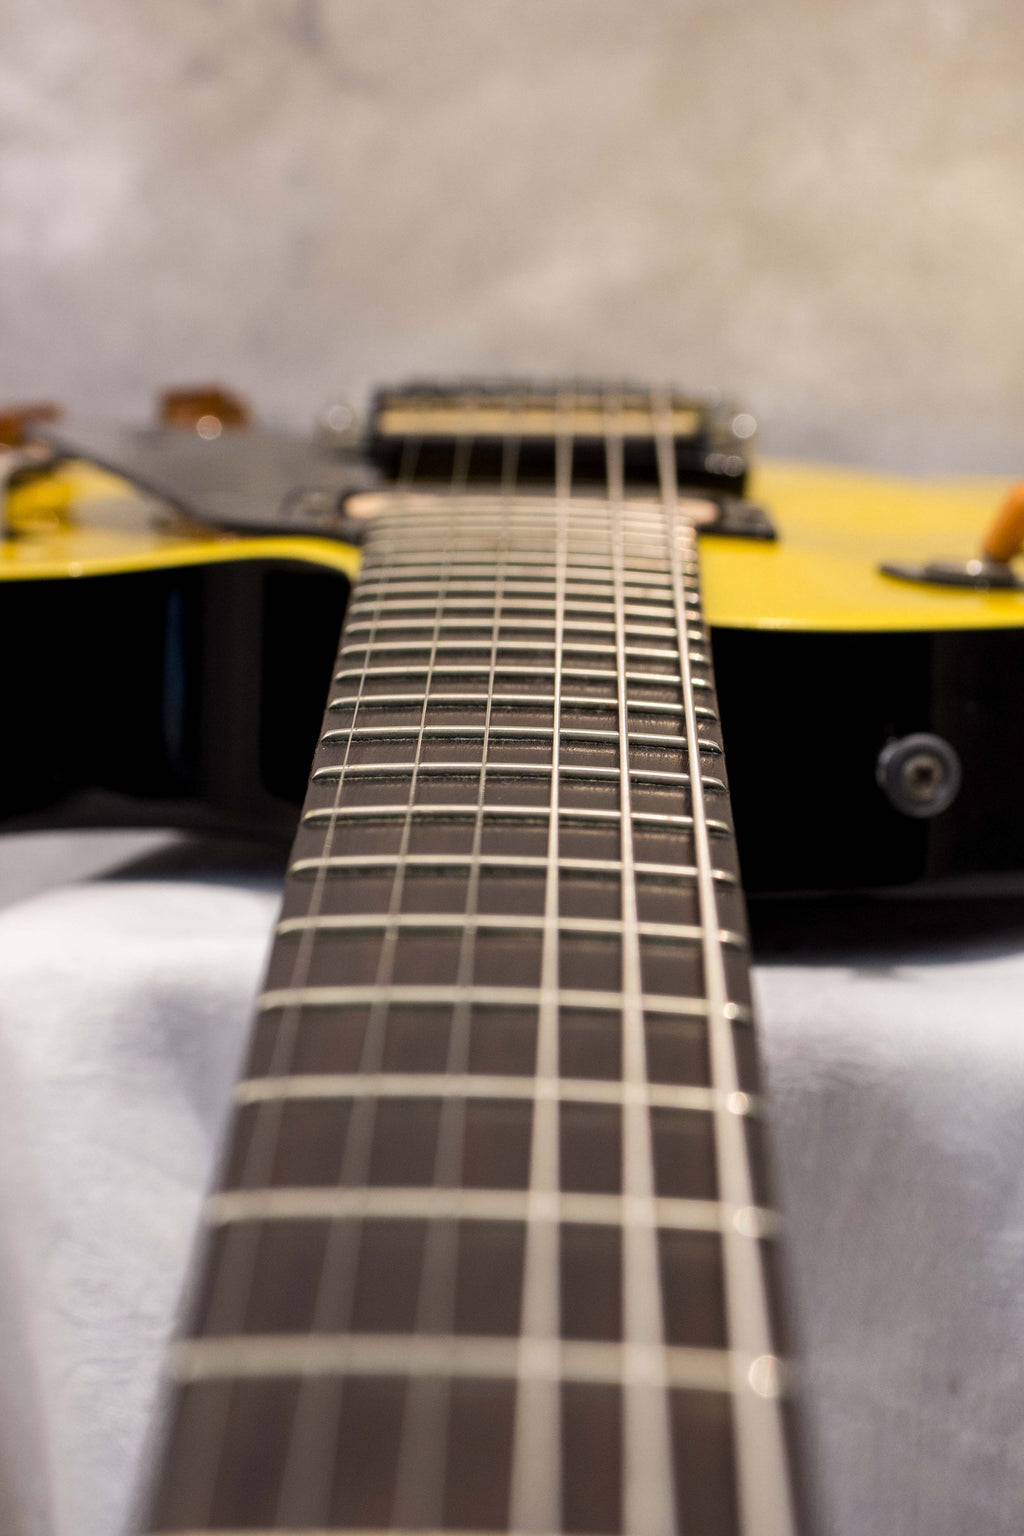 Gibson Les Paul Studio Metallic Yellow 2001